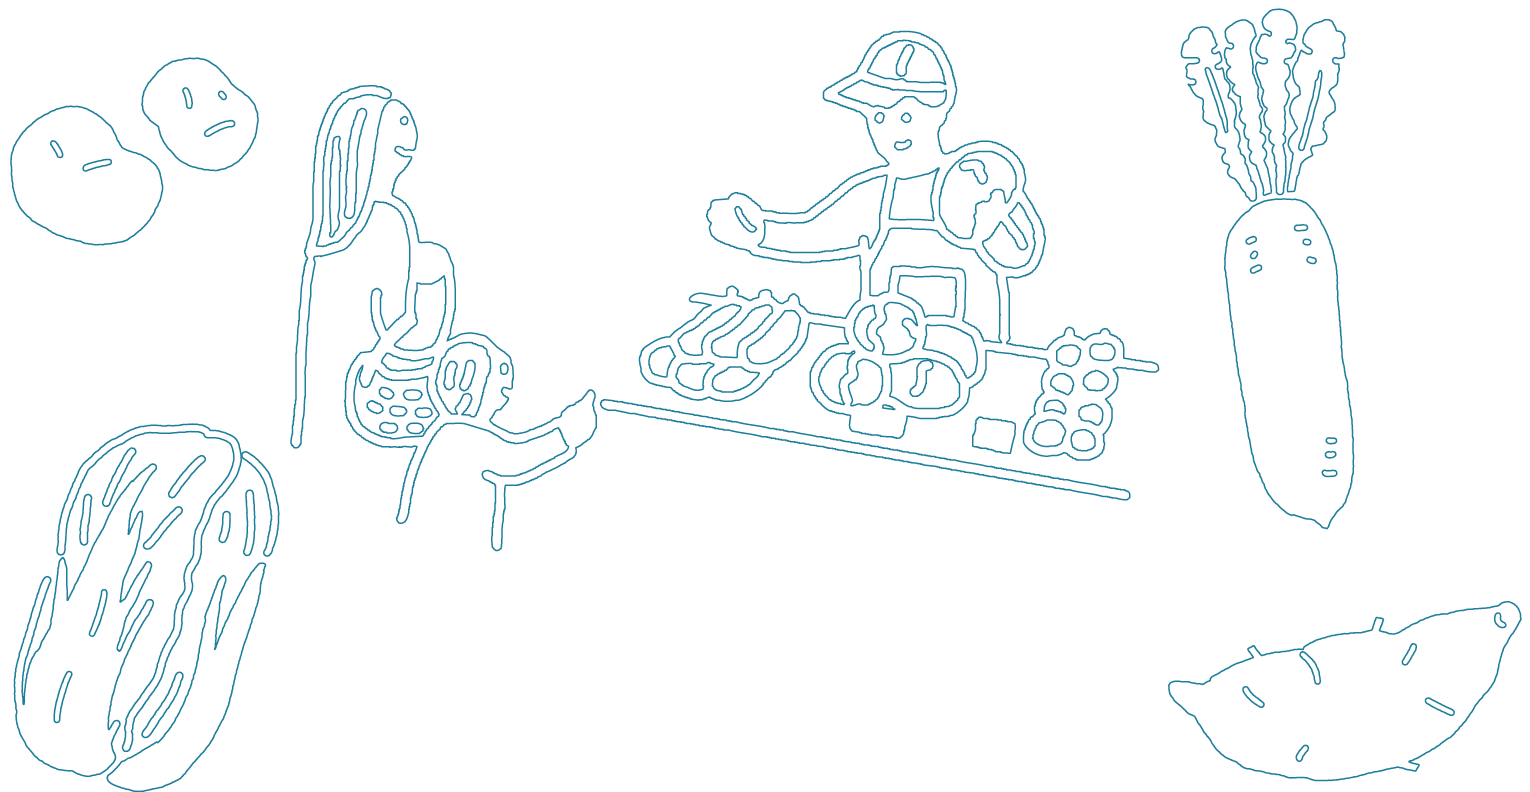 新鮮野菜の朝市 / NPO法人おかざき農遊会